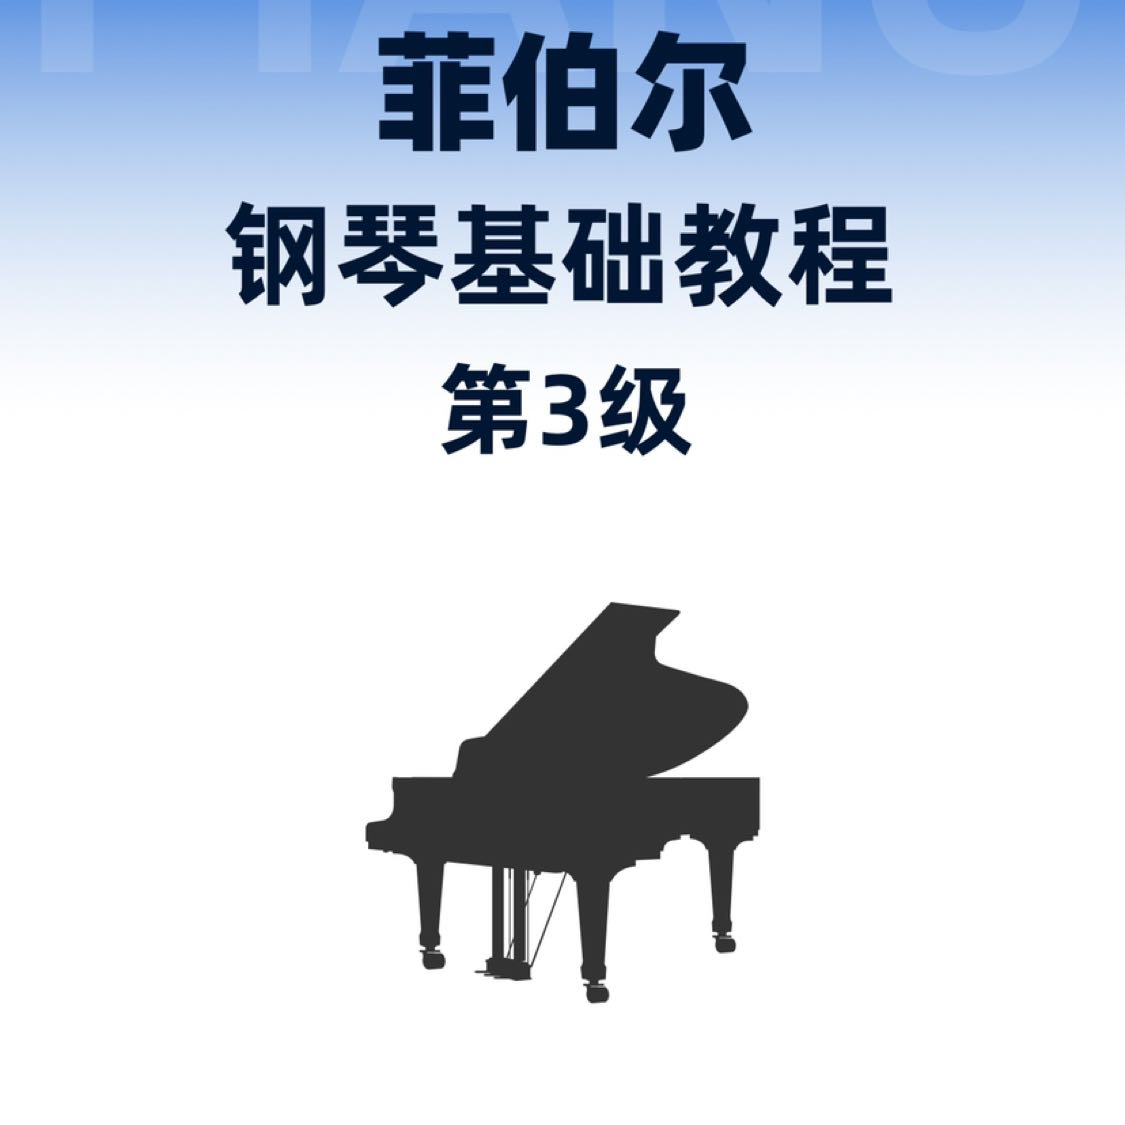 菲伯尔钢琴基础教程 第3级 课程和乐理-钢琴谱